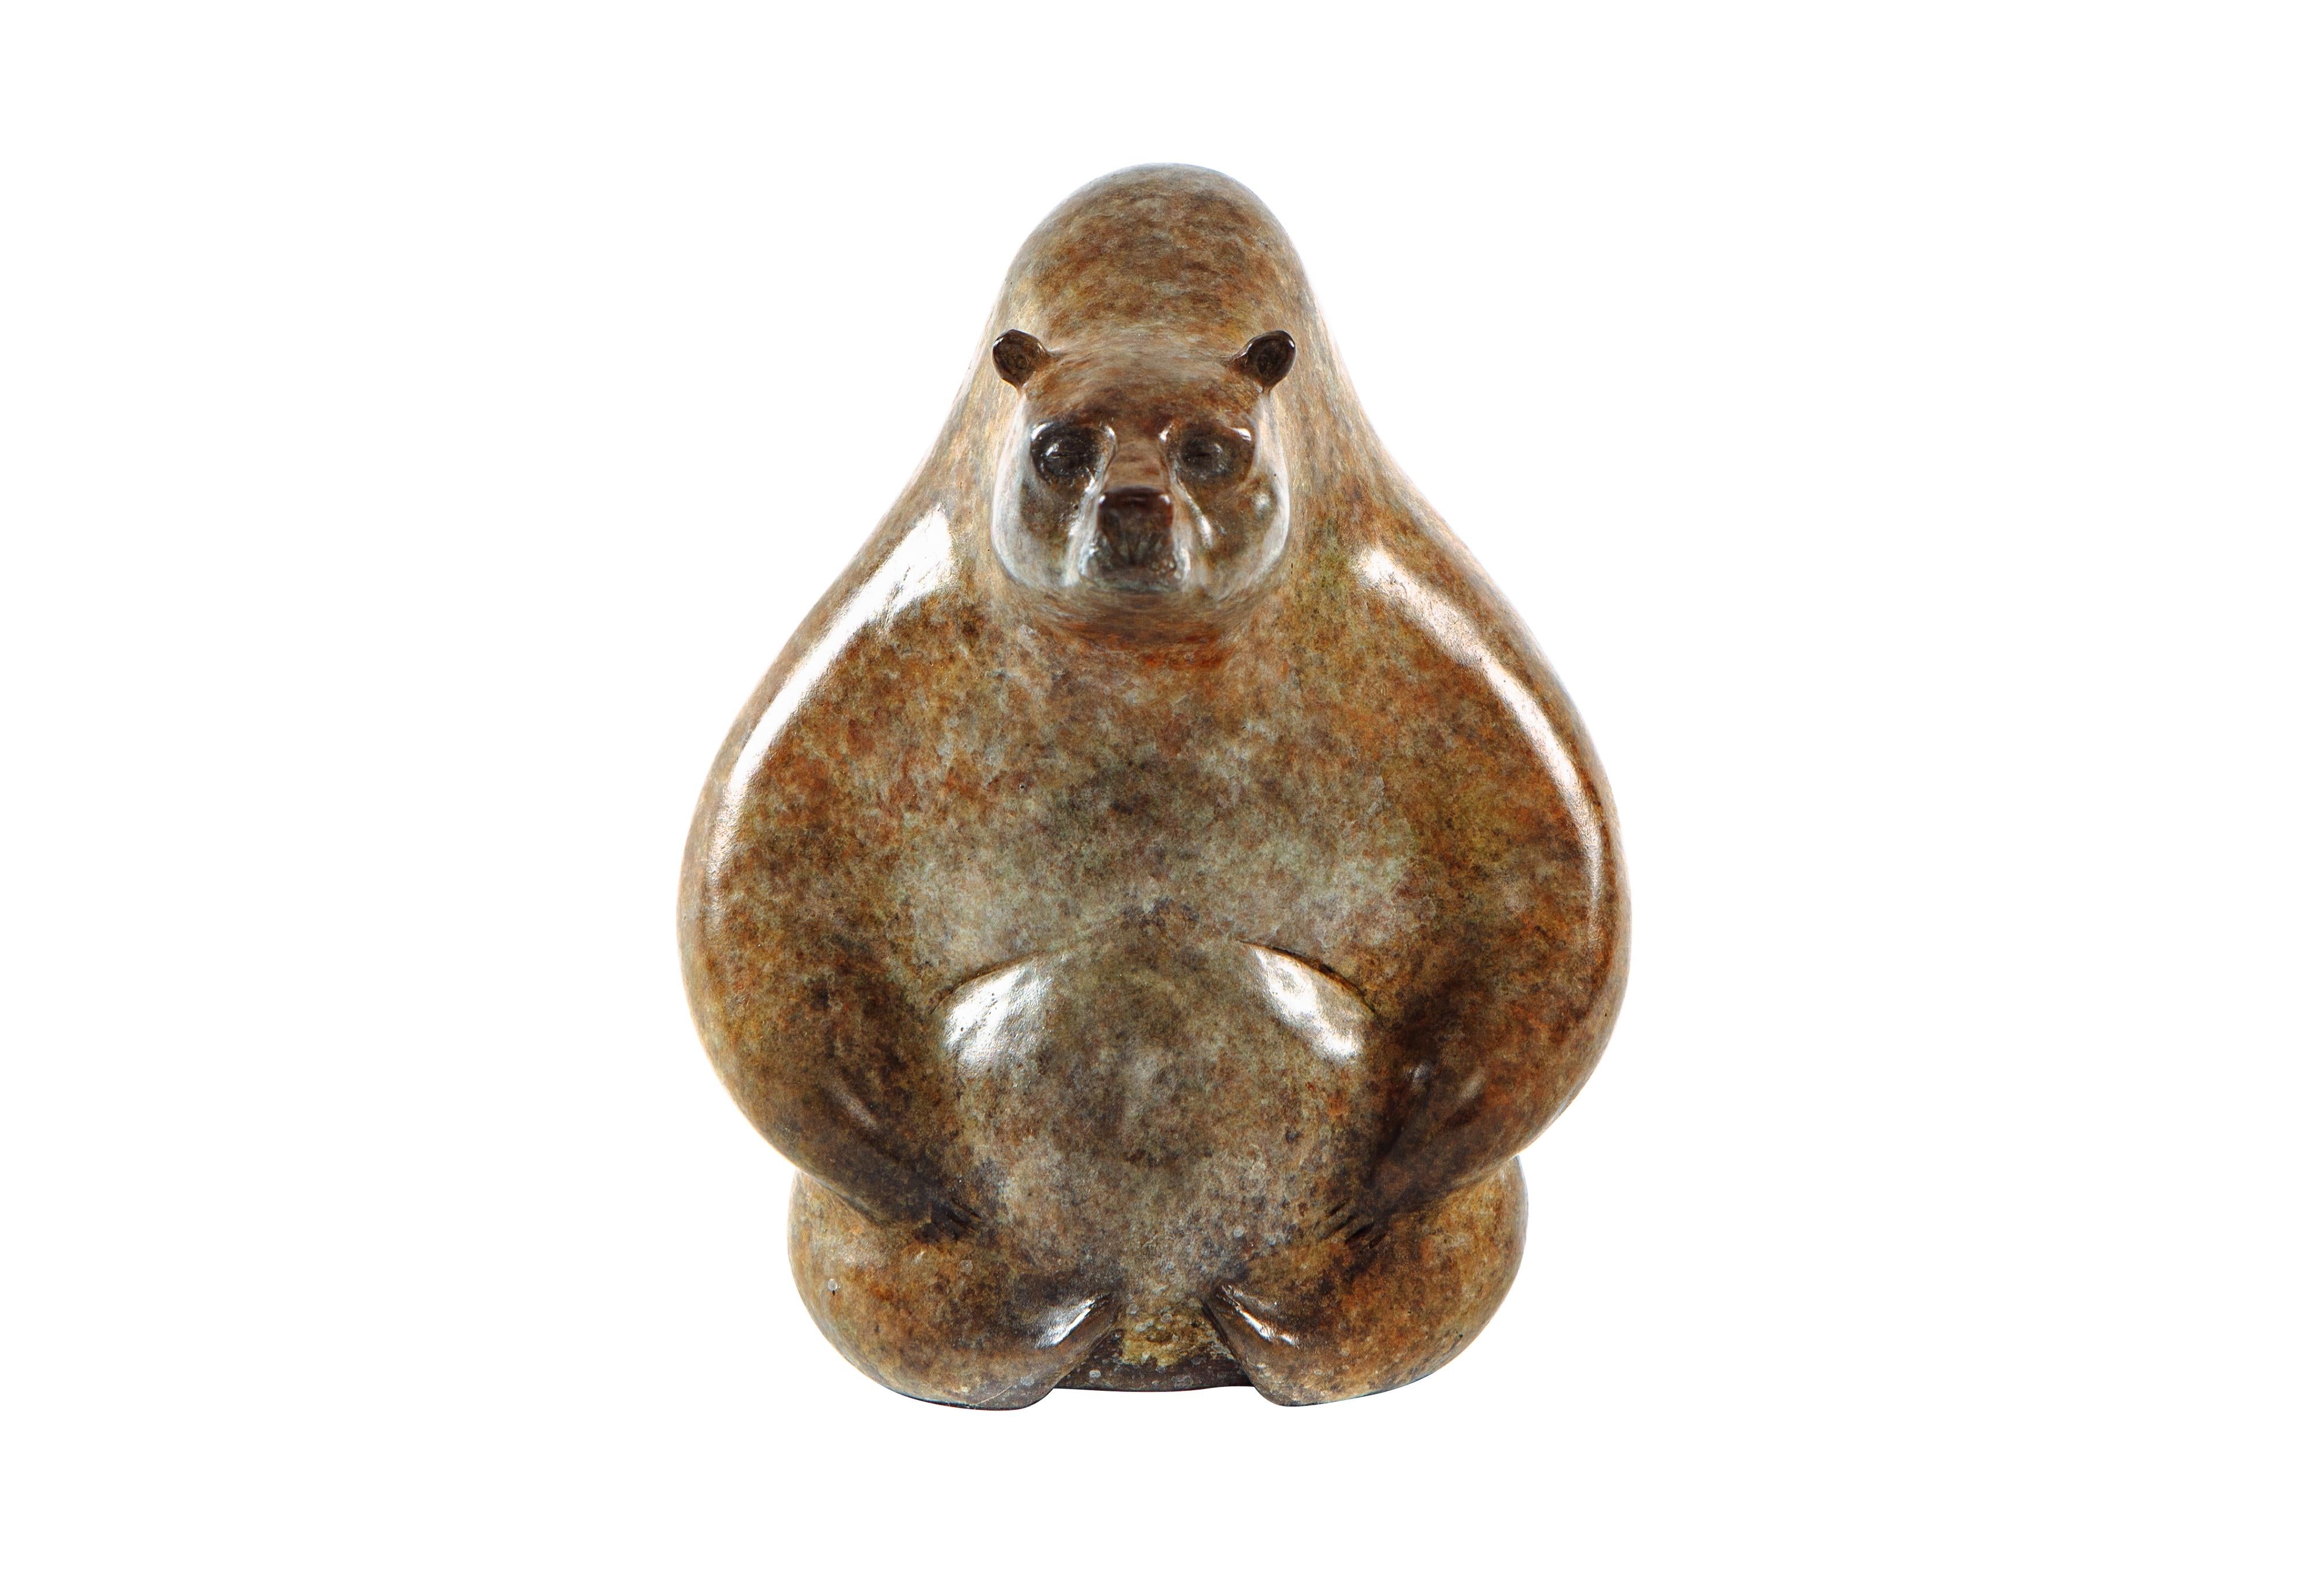 Victor Mikhailov Figurative Sculpture - He-Bear - original bronze cast sculpture wildlife animal figurative modern art